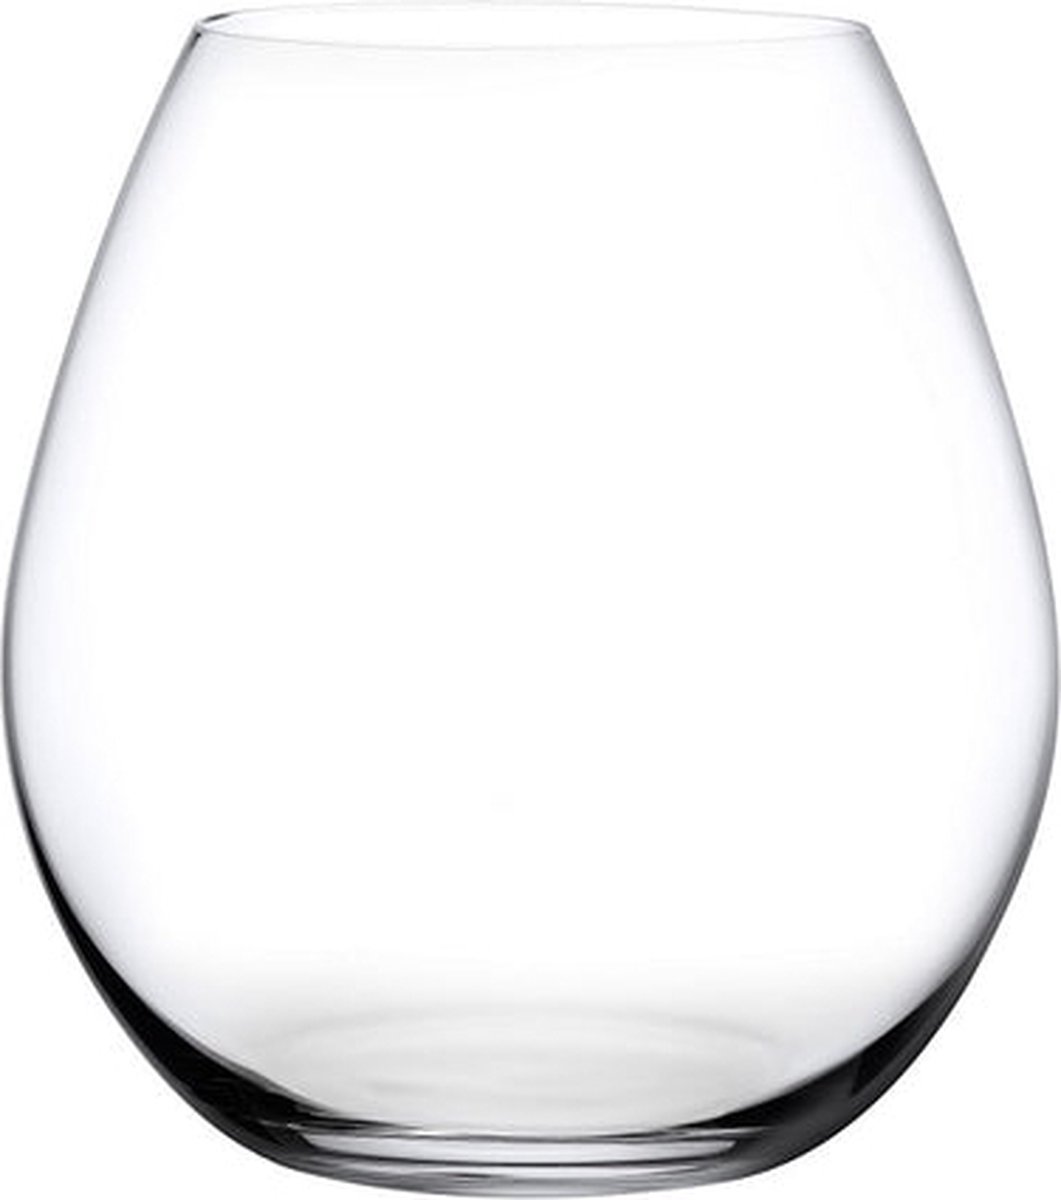 Nude Glass Pure Bourgogne Wijnglas - Set Van 4